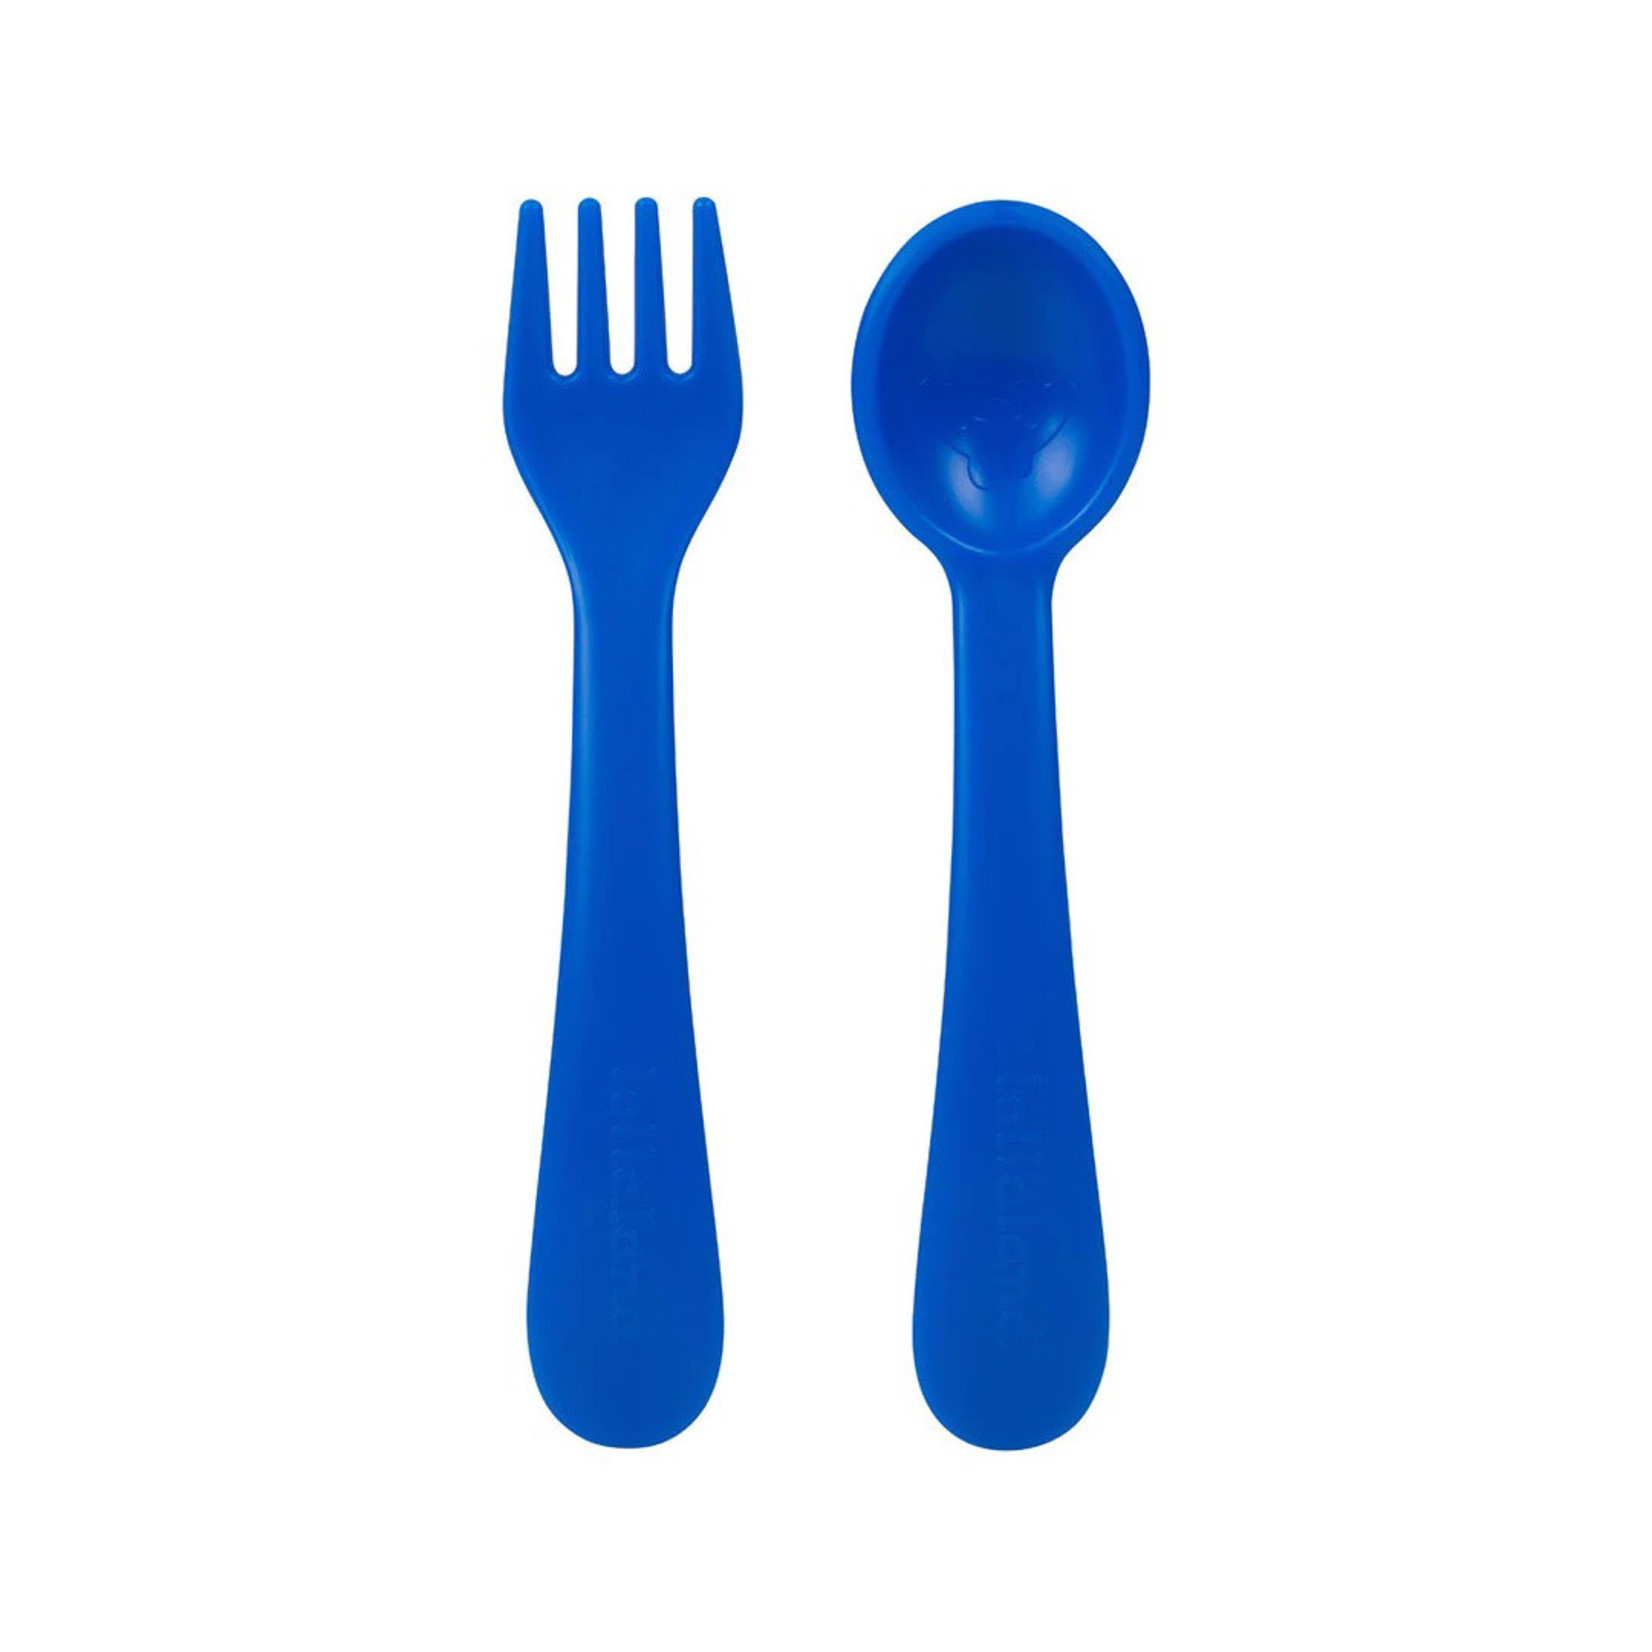 https://cdn.shoplightspeed.com/shops/652247/files/43437166/1652x1652x1/lollaland-utensil-set-2-spoon-2-fork-travel-pouch.jpg